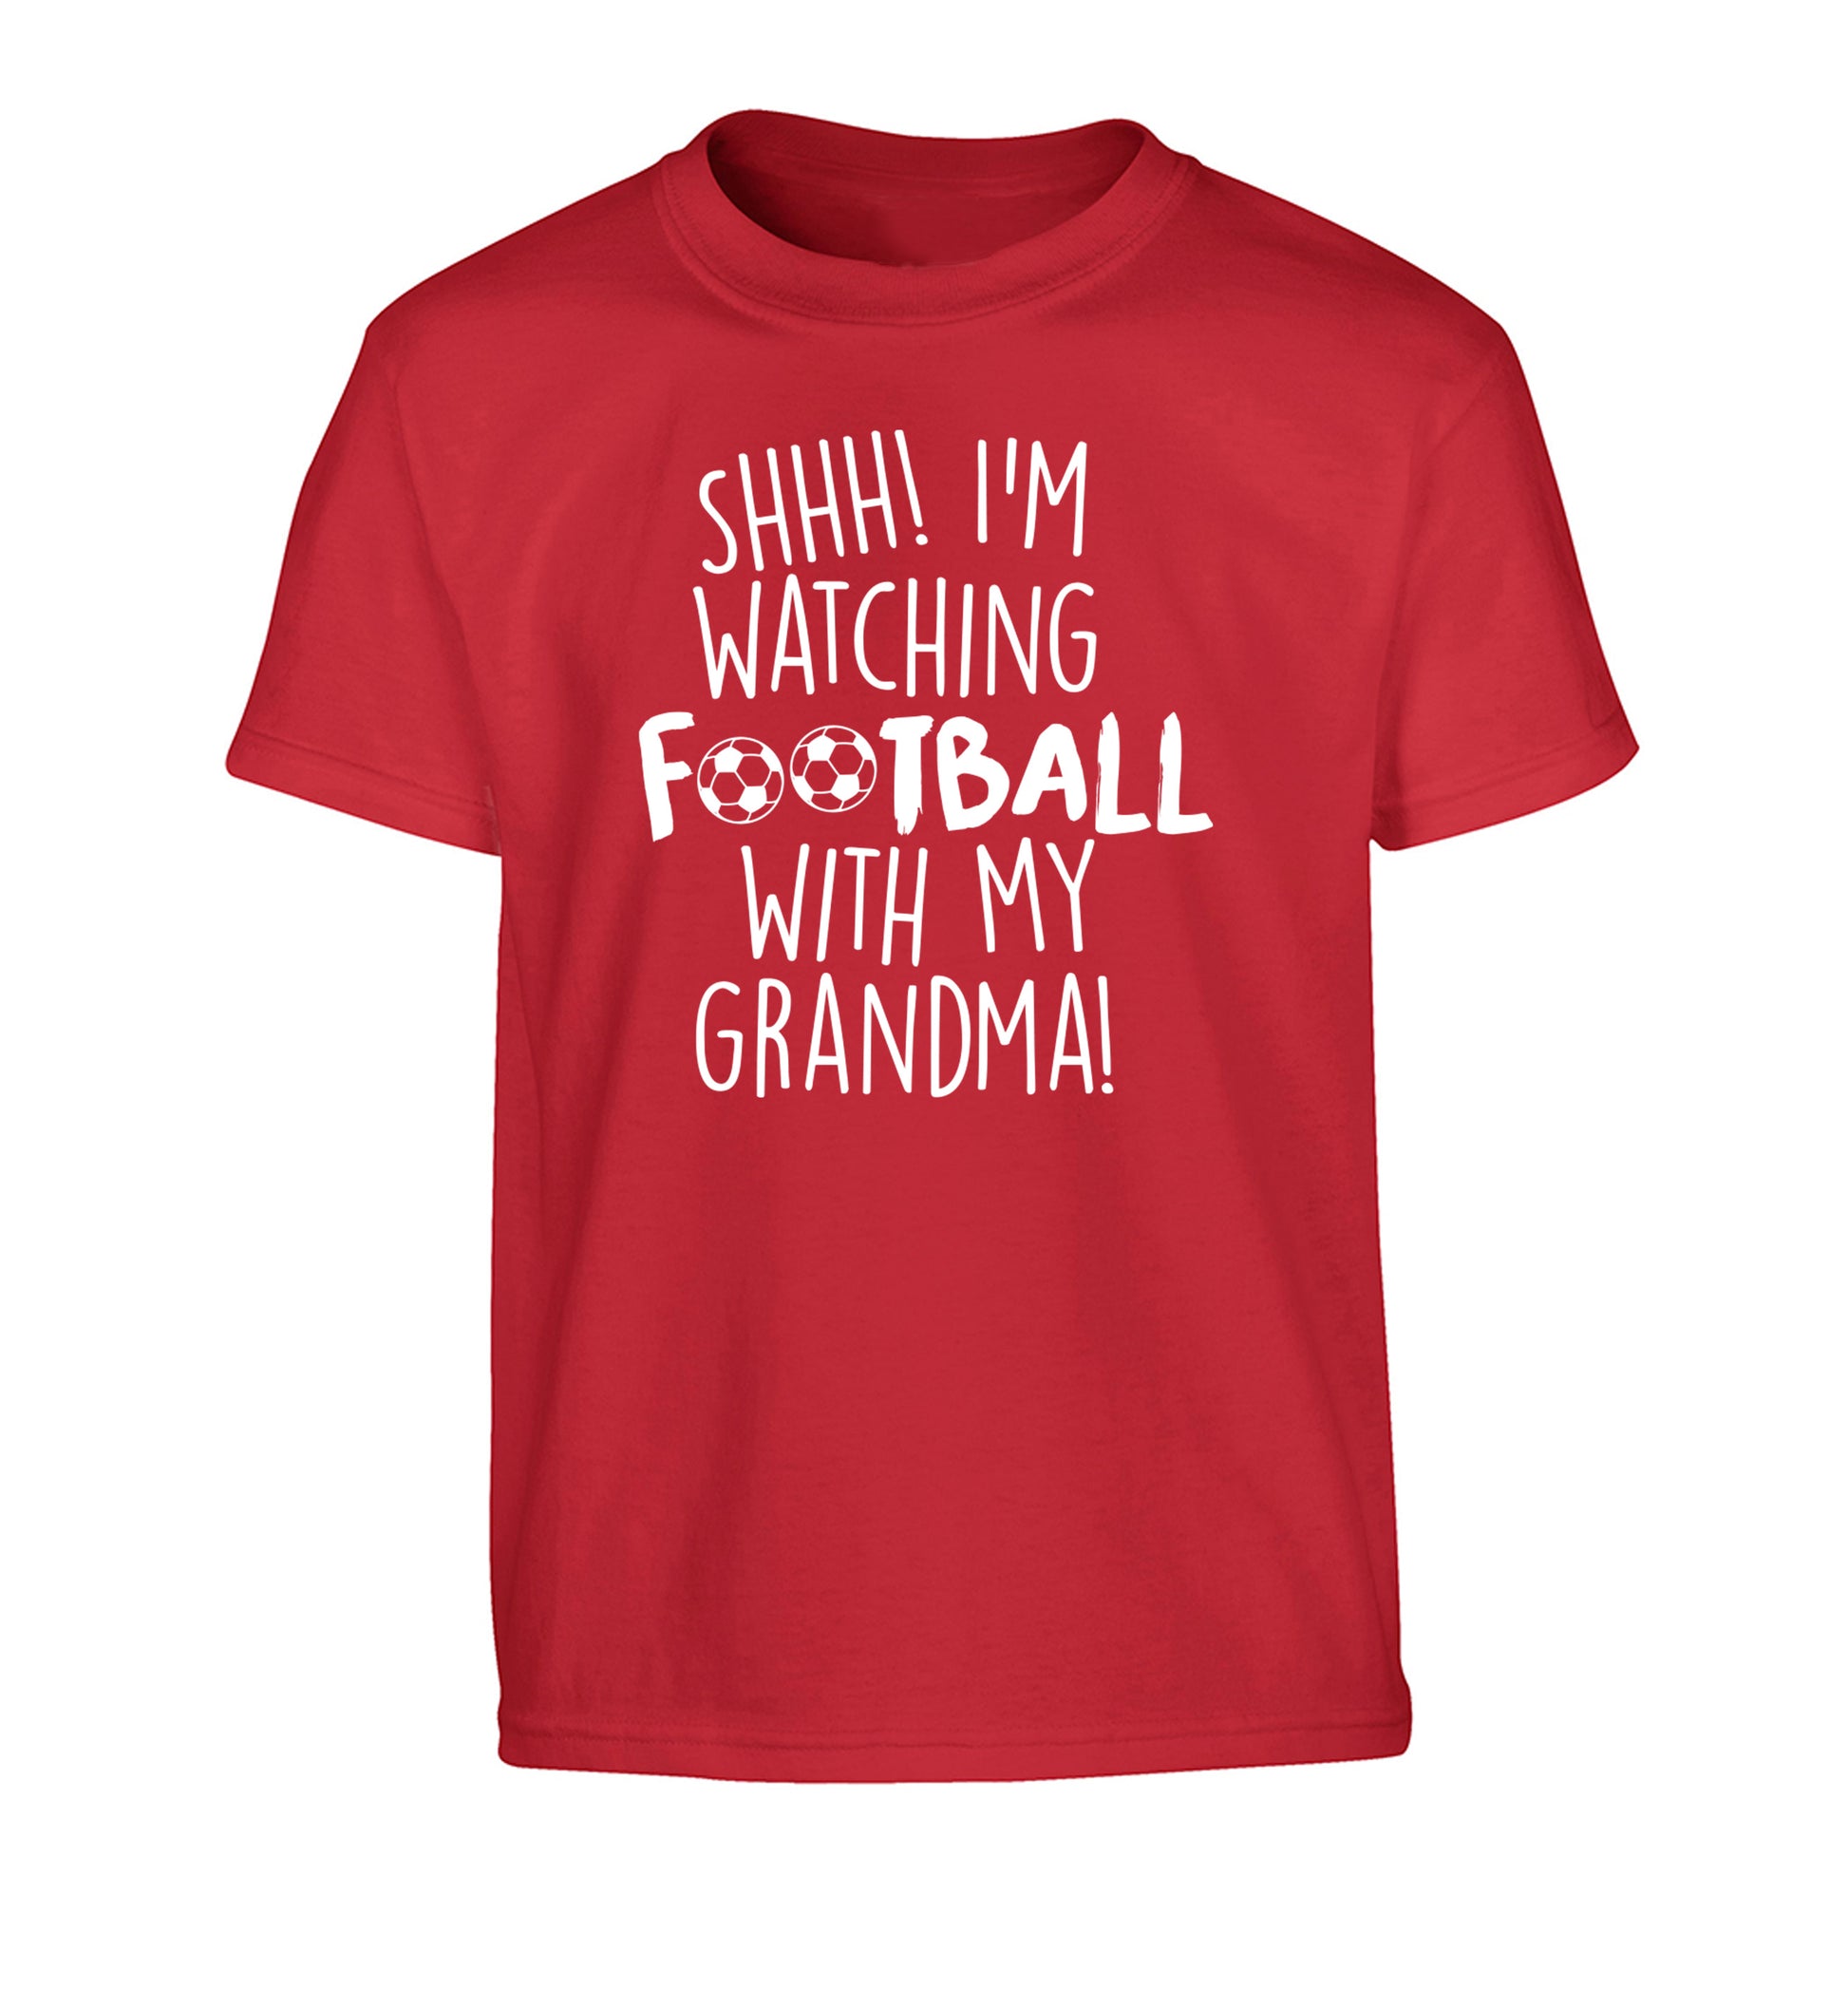 Shhh I'm watching football with my grandma Children's red Tshirt 12-14 Years